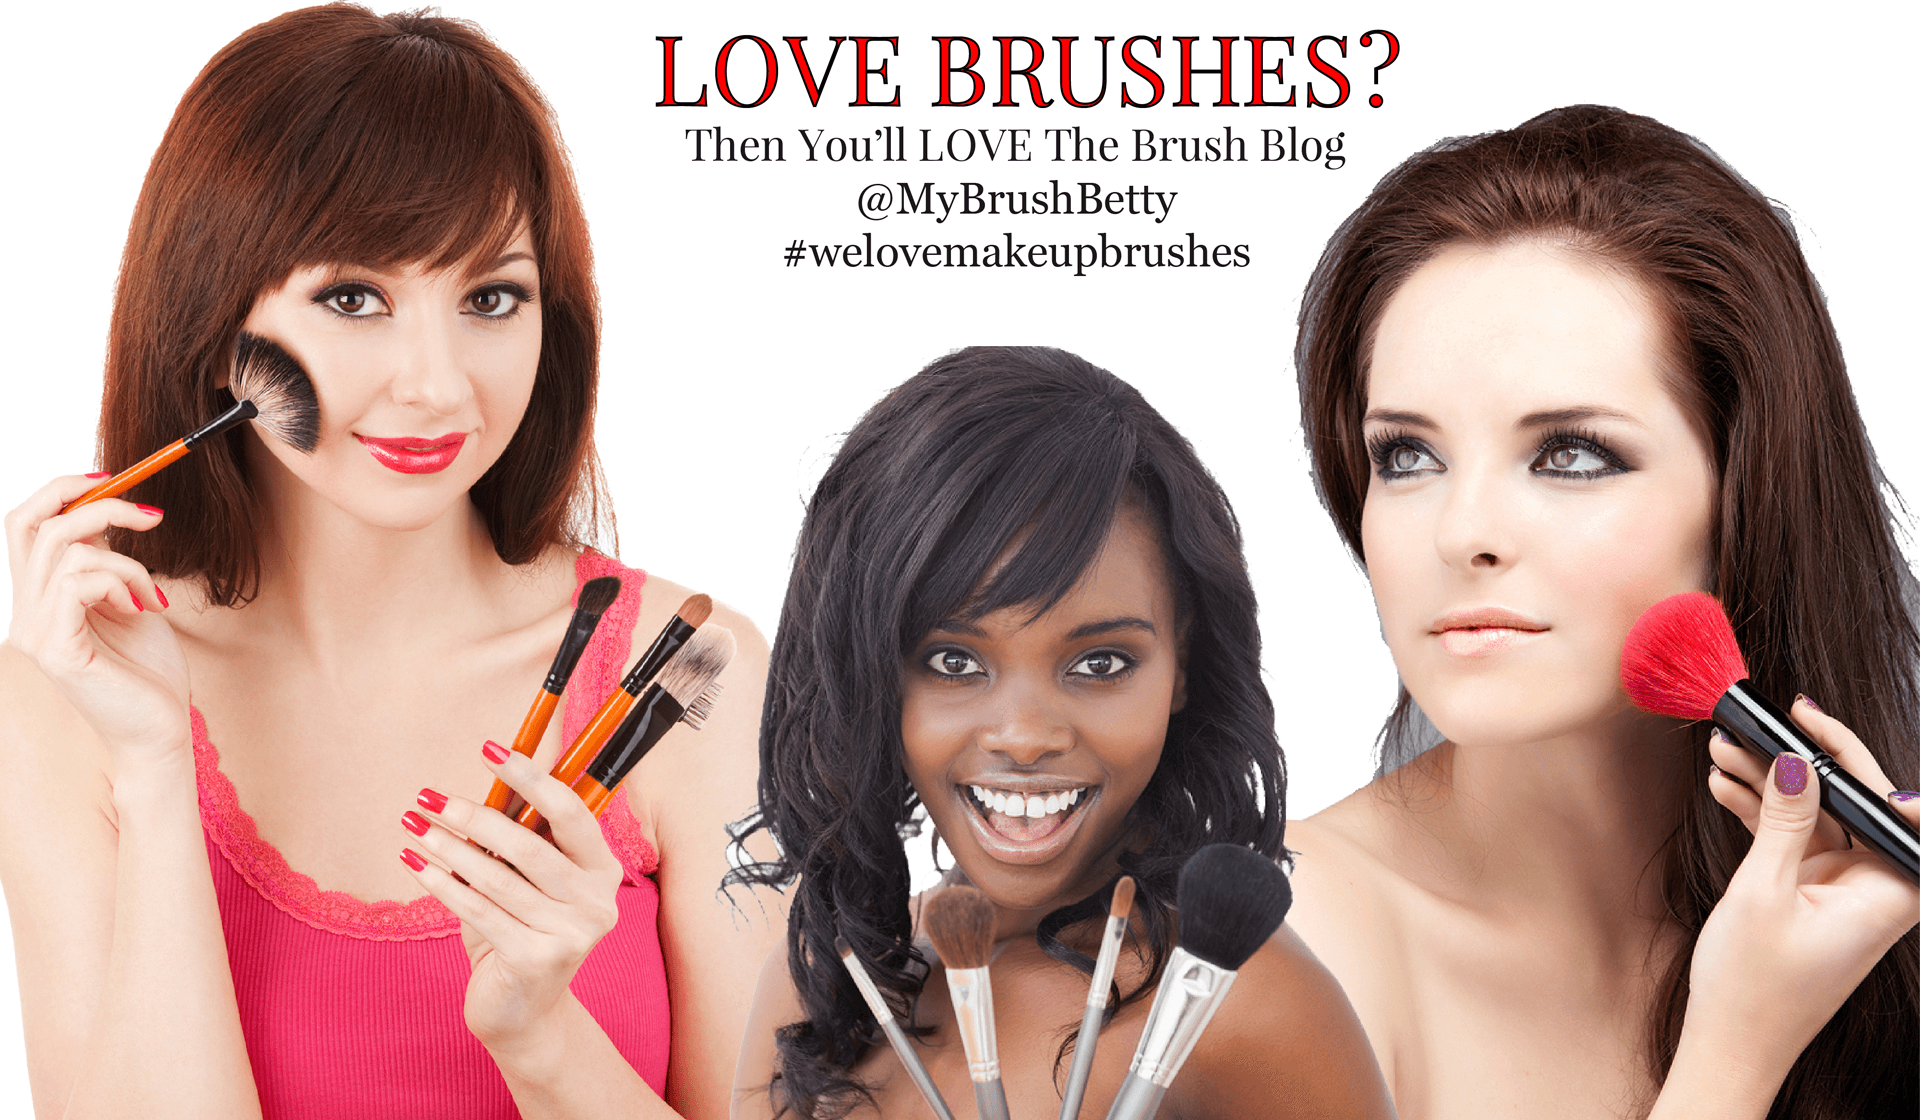 My Brush Betty's Makeup Brush Blog